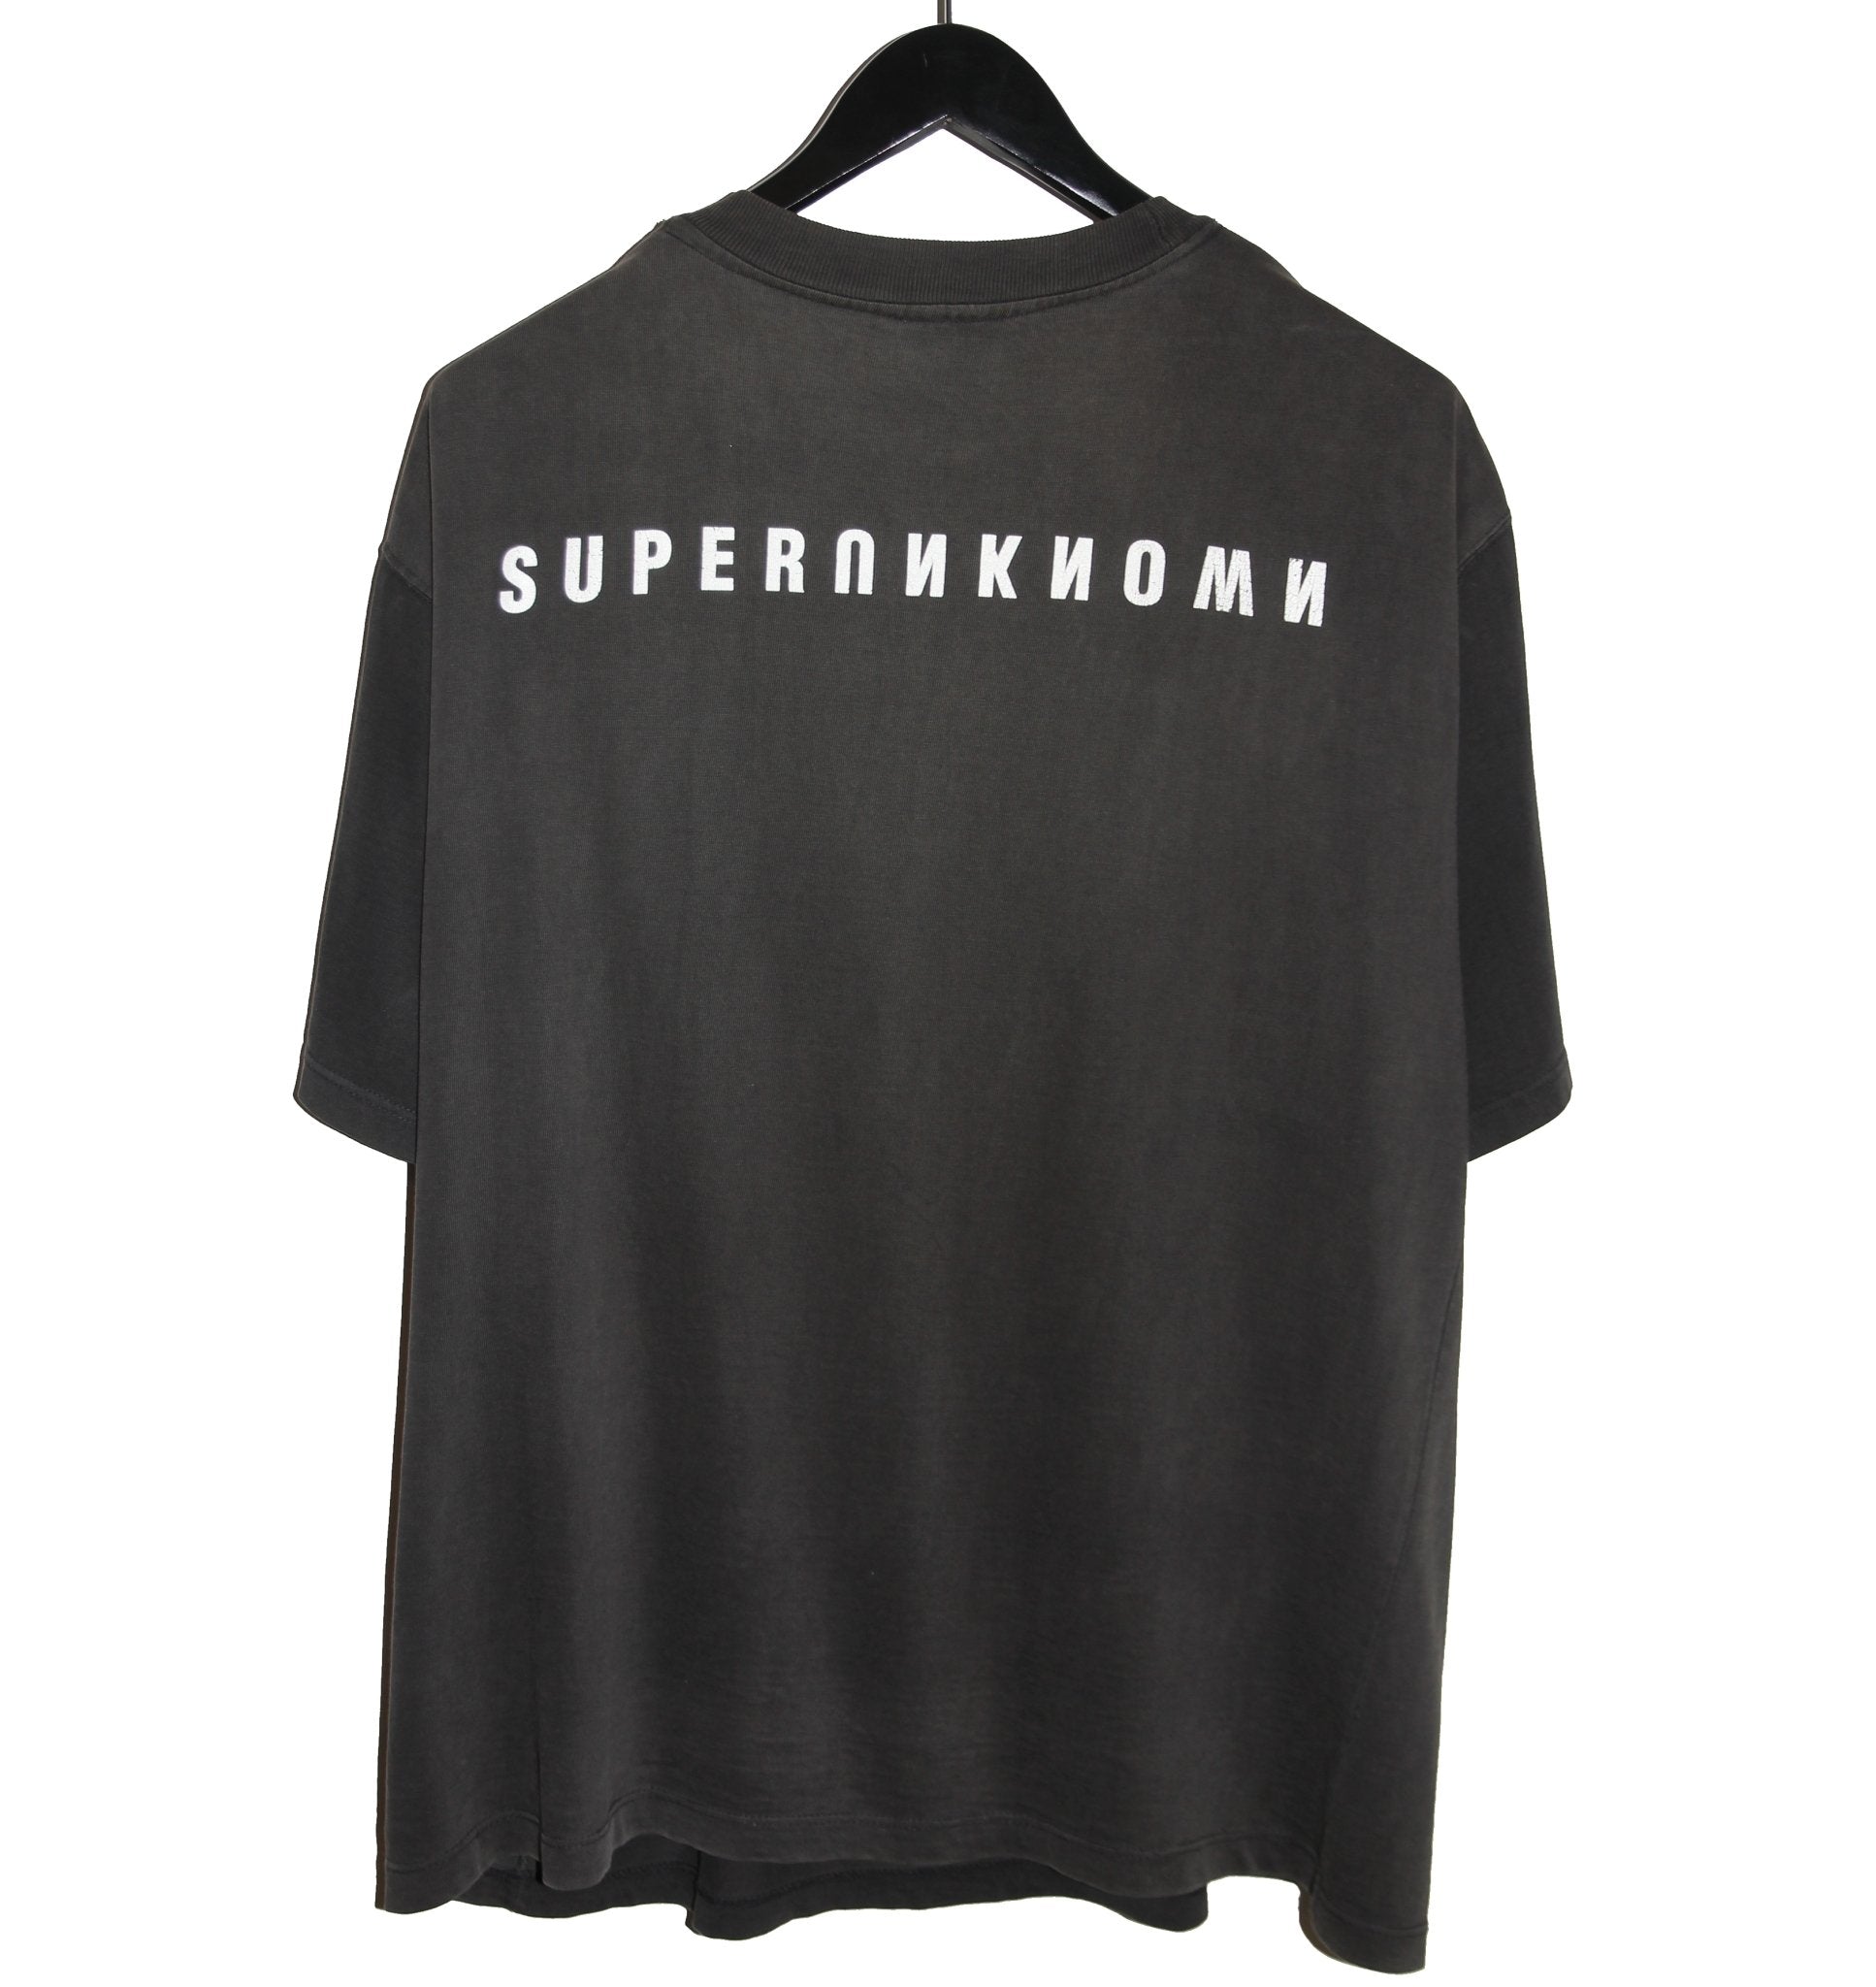 Soundgarden 1994 Superunknown Album Shirt - Faded AU